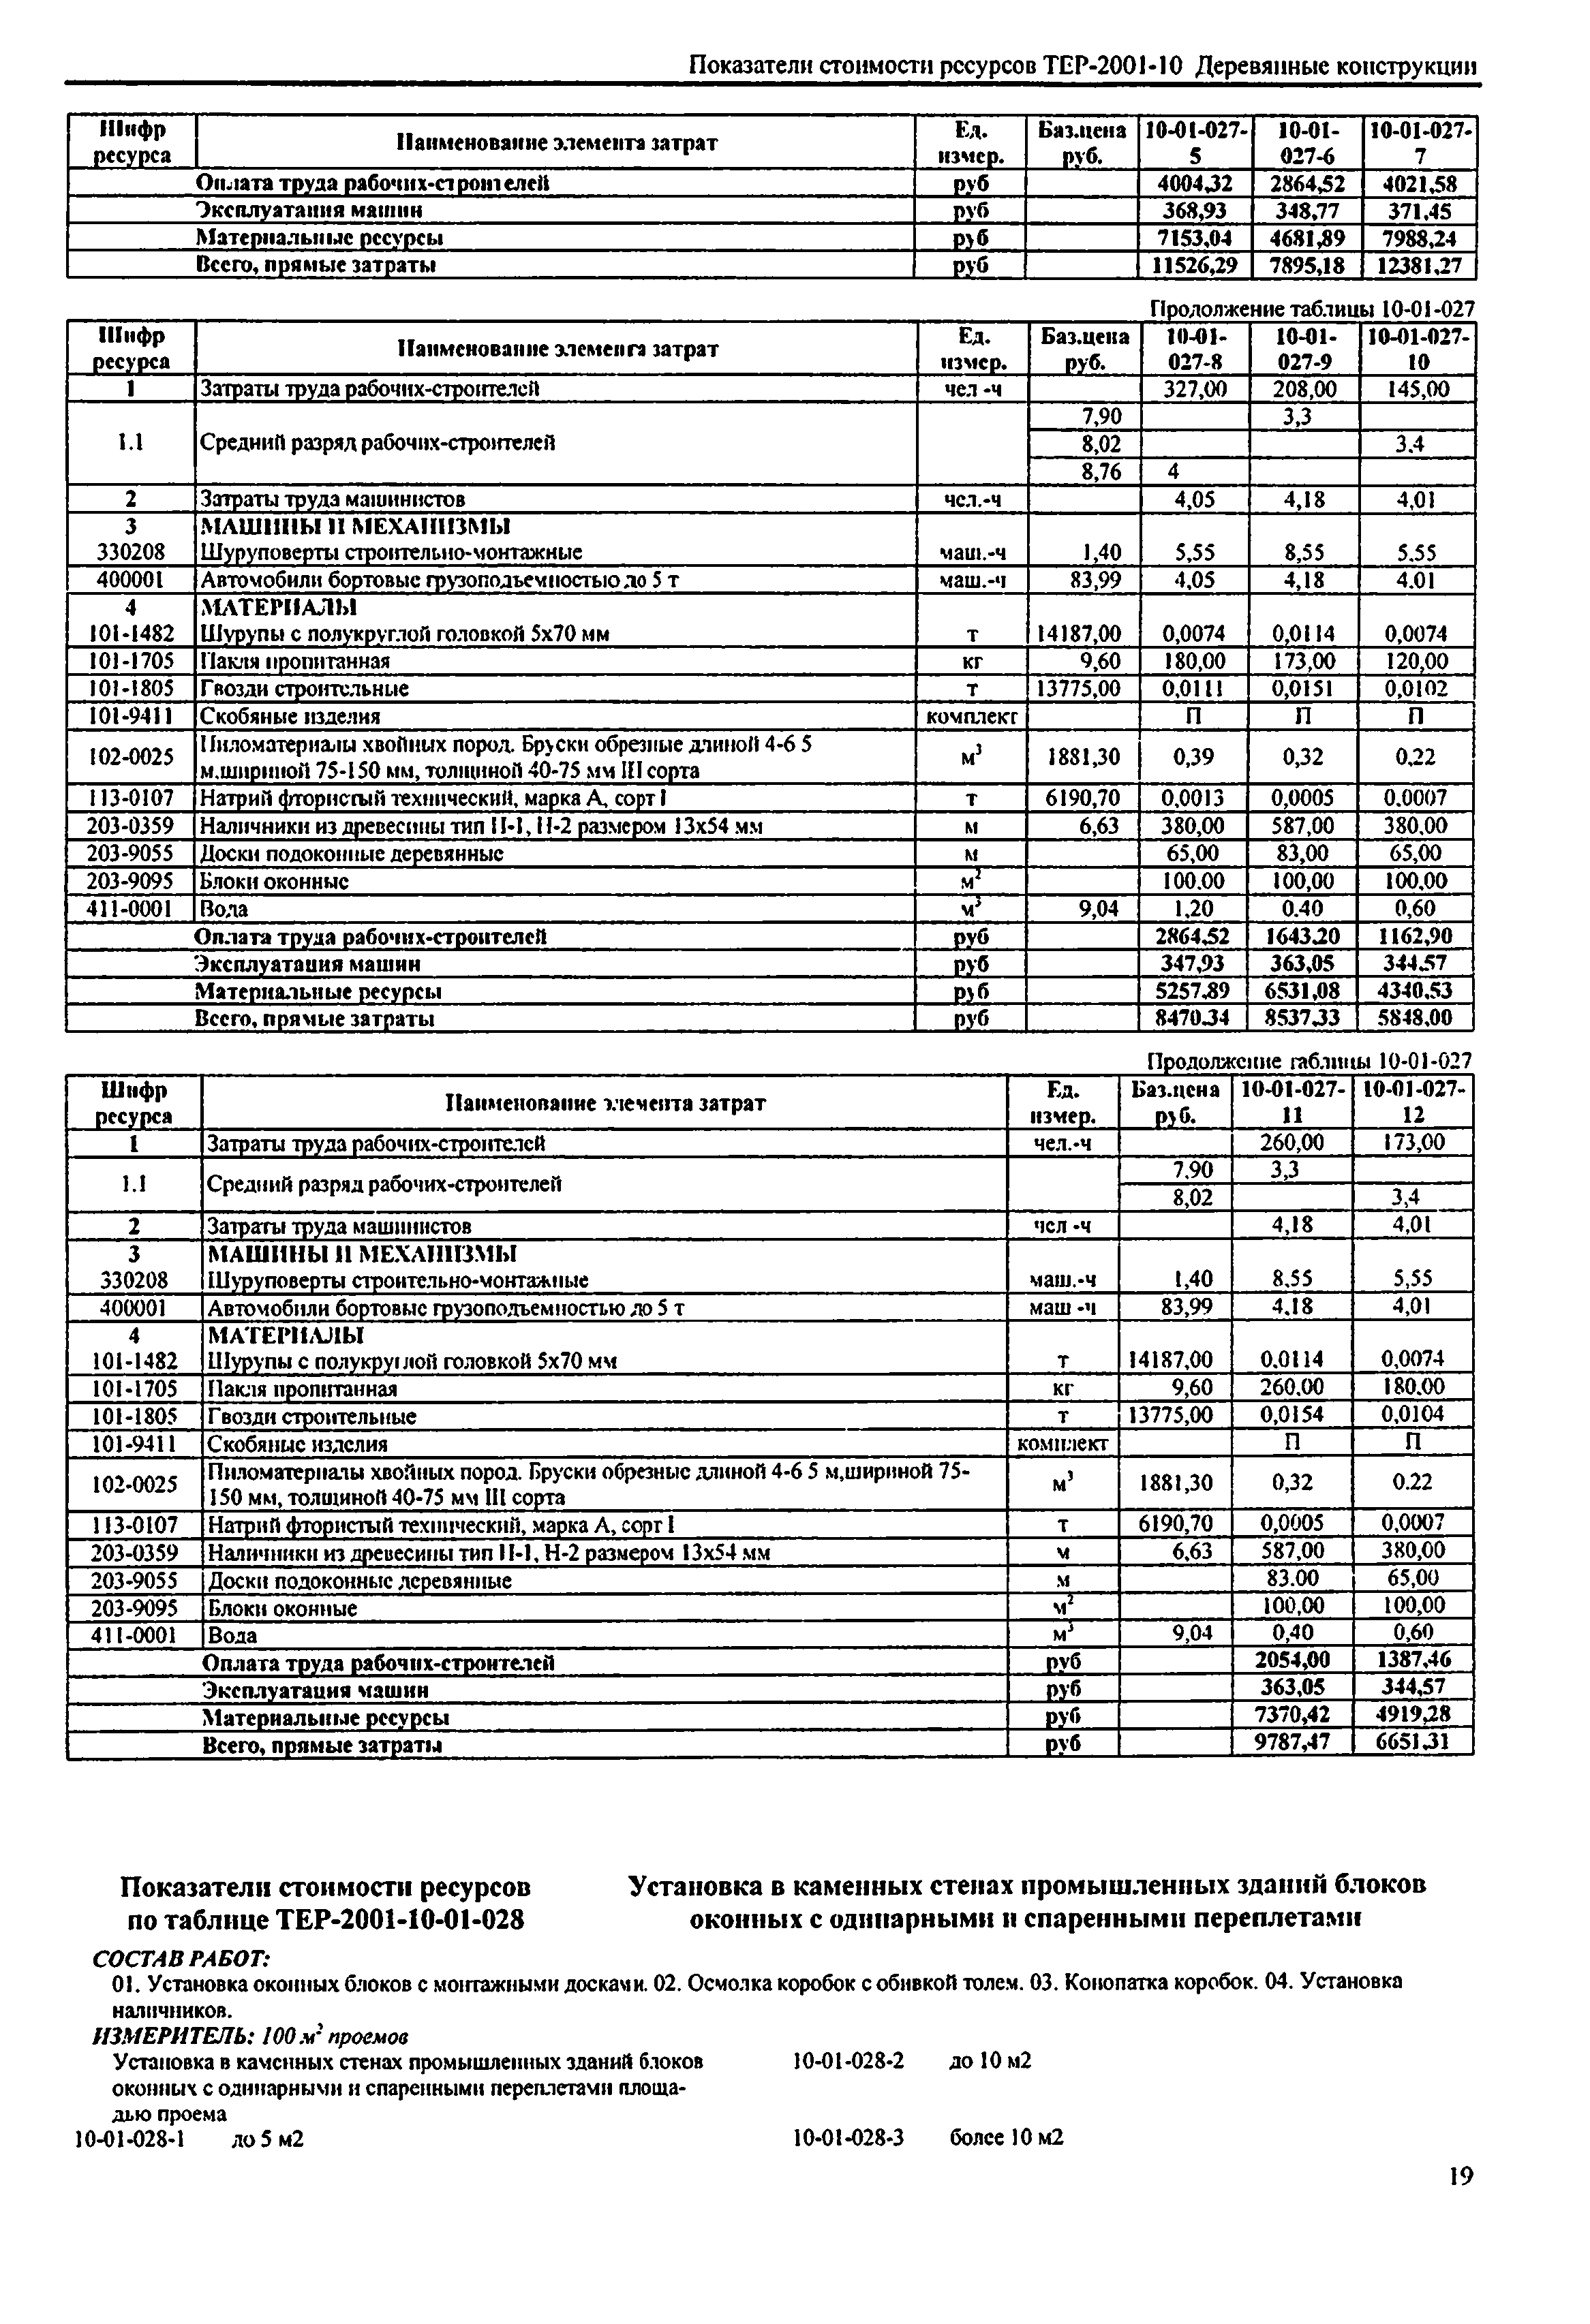 Справочное пособие к ТЕР 81-02-10-2001